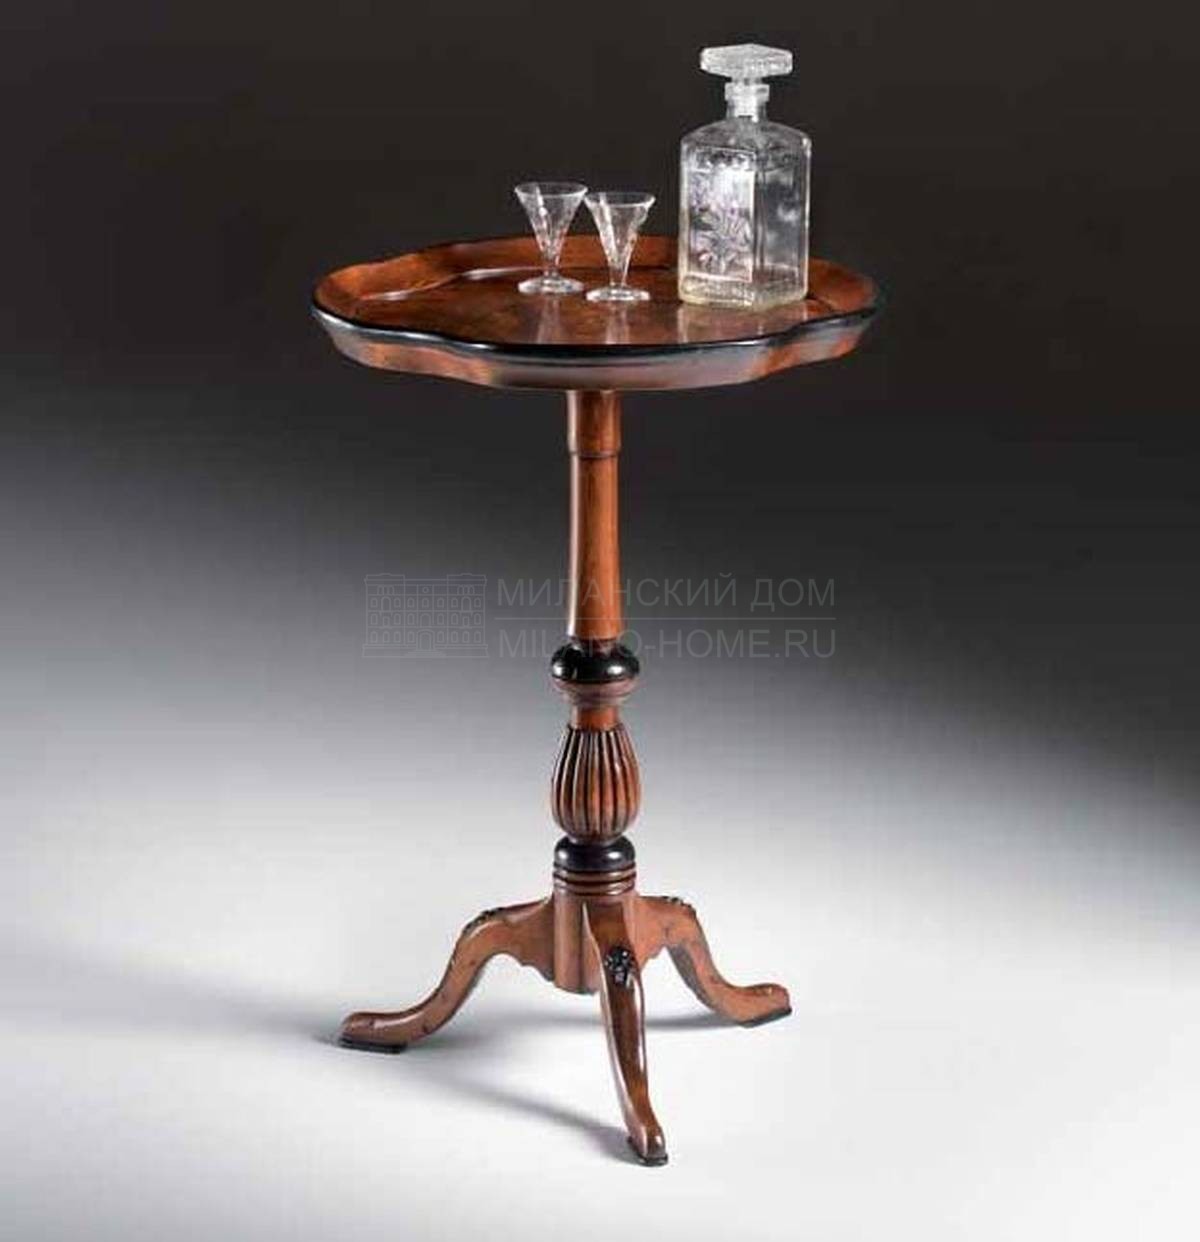 Кофейный столик Minion/21060.1420 из Италии фабрики FRANCESCO MOLON